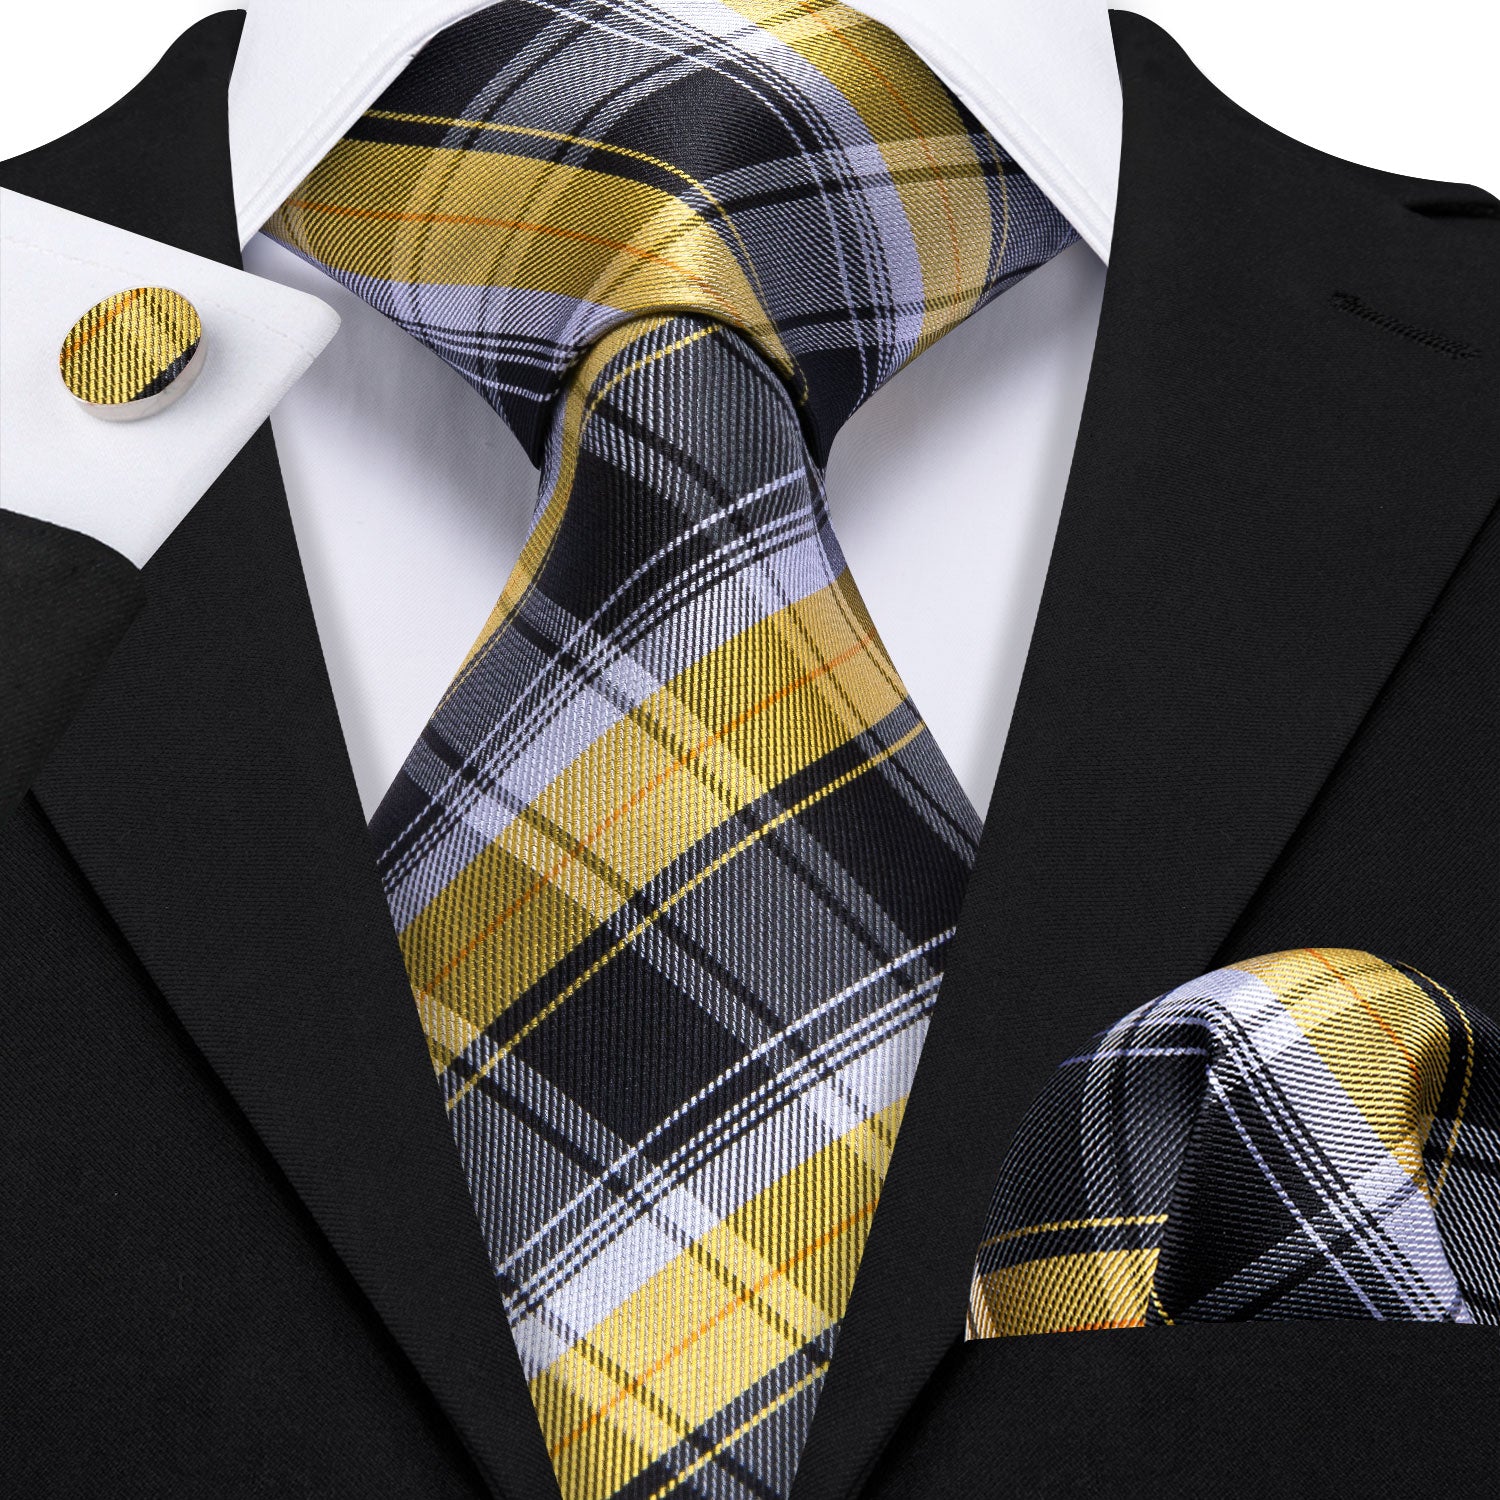 Black Yellow Striped Silk Tie Handkerchief Cufflinks Set